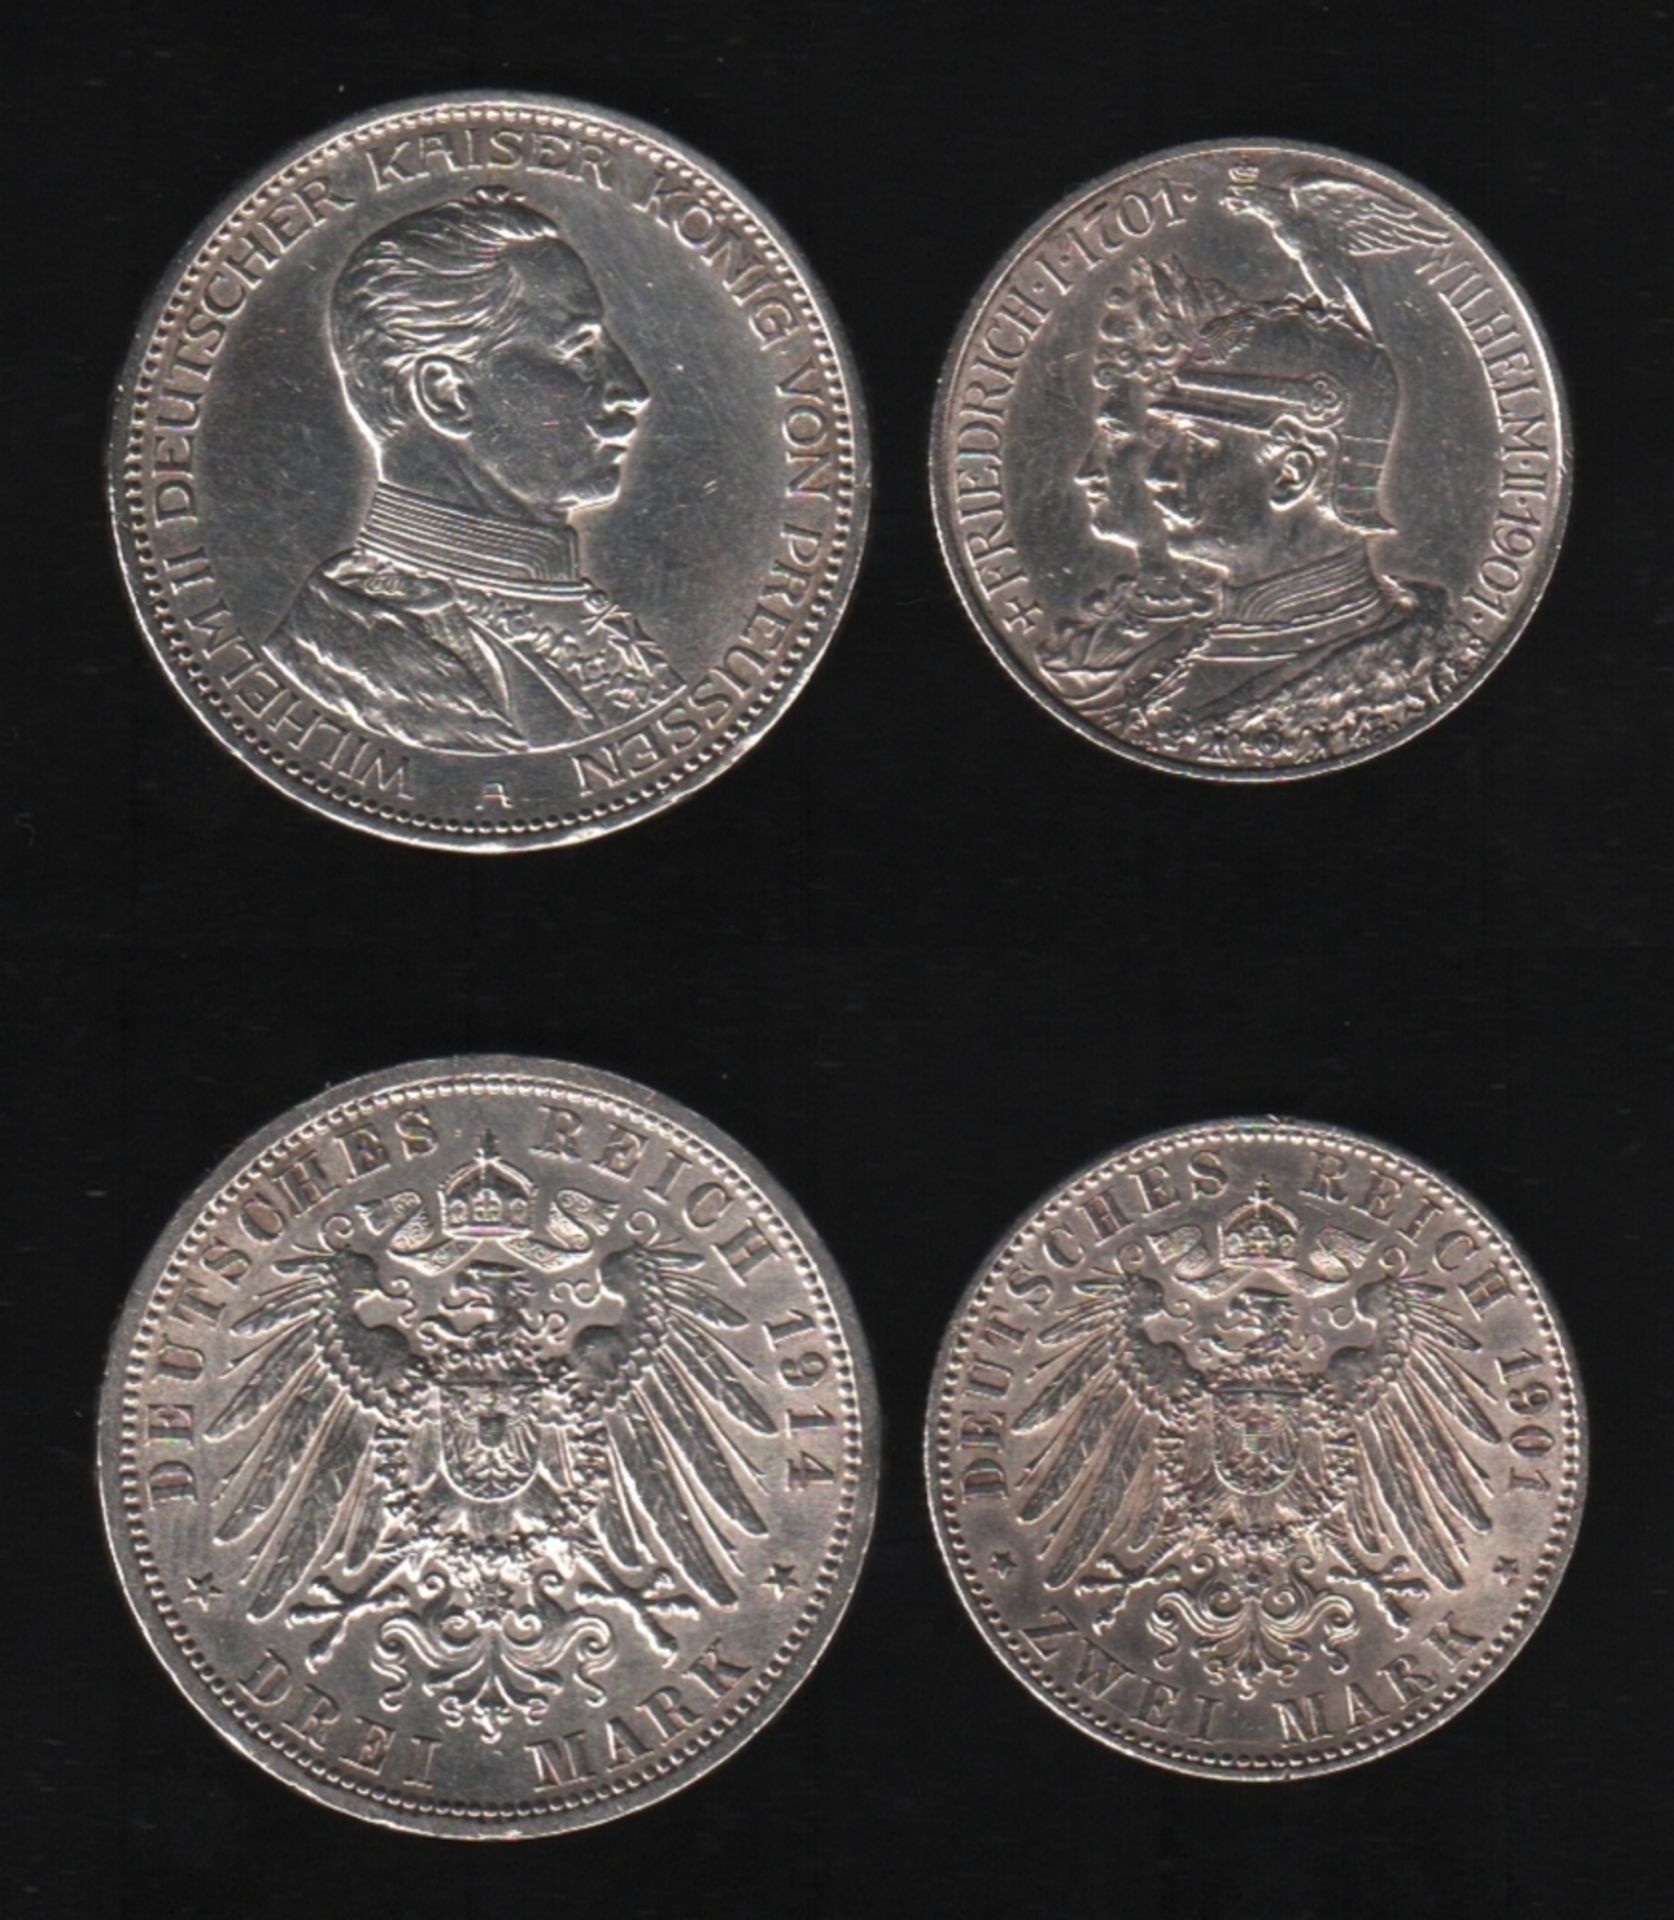 Deutsches Reich. Silbermünze. 2 Mark. 200 Jahre Königreich Preußen. 1901. Vorderseite: Porträt